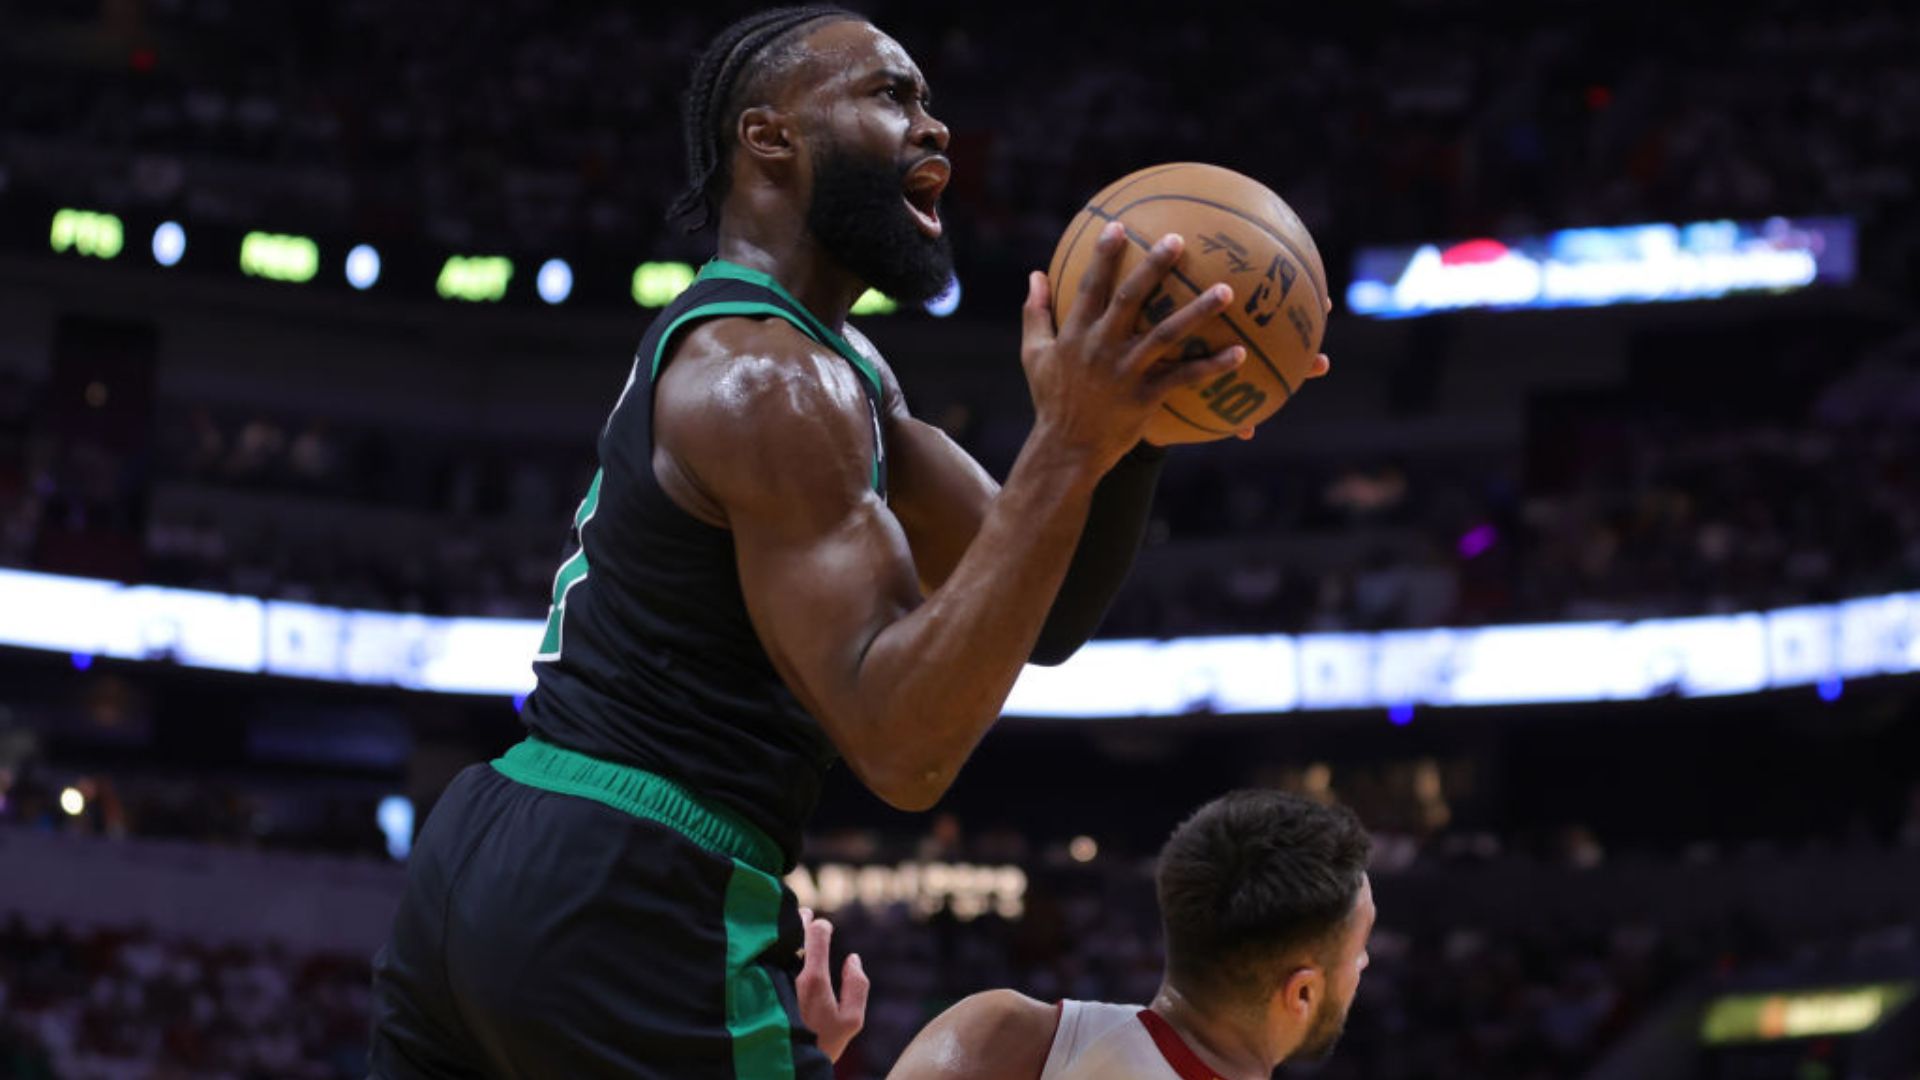 Miami Heat pode fazer 4 x 0 nos Celtics: onde assistir e horário